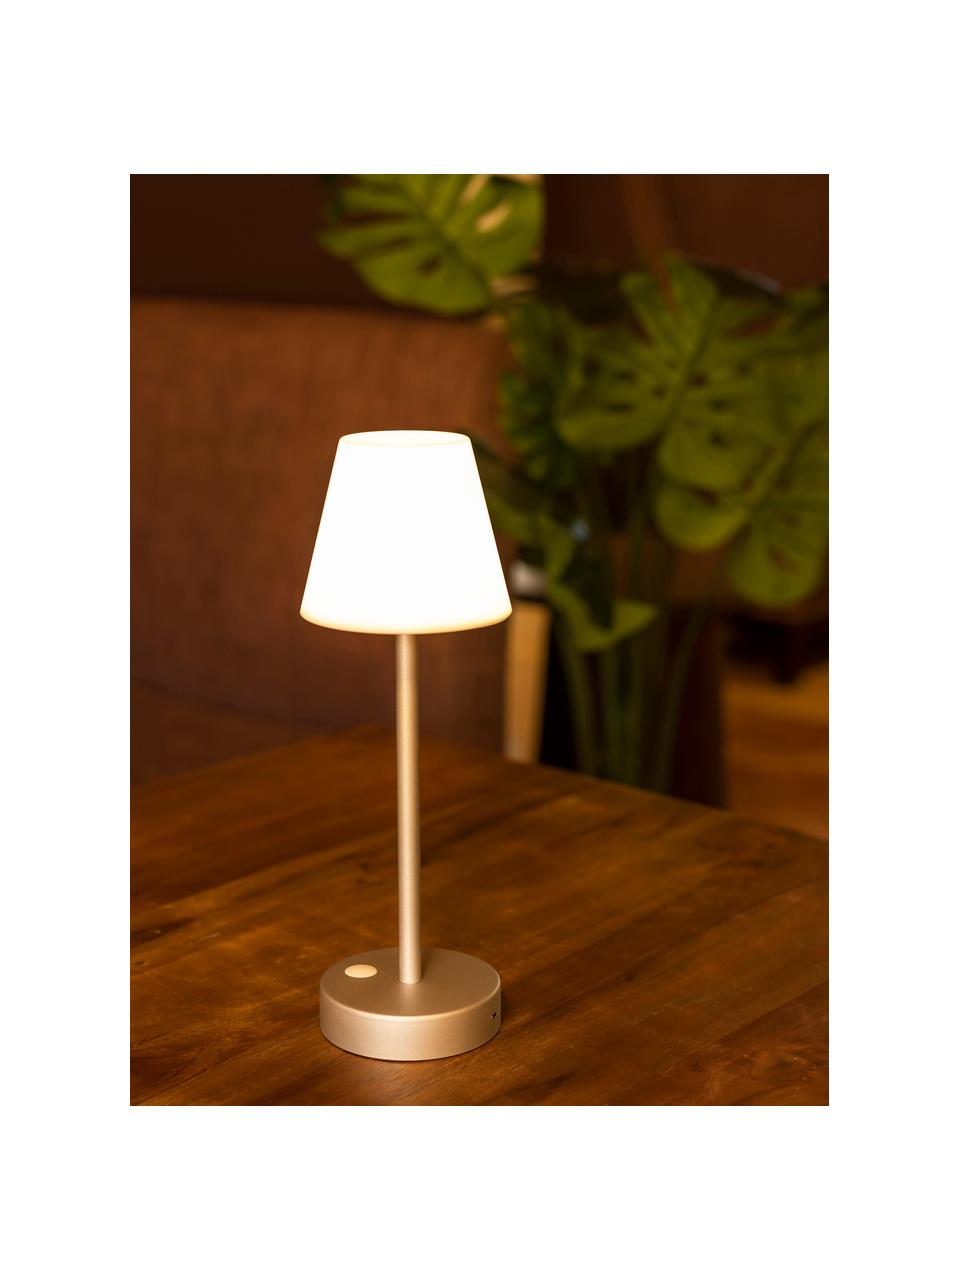 Mobilna lampa zewnętrzna LED z funkcją przyciemniania Lola, Odcienie złotego, biały, Ø 11 x 32 cm